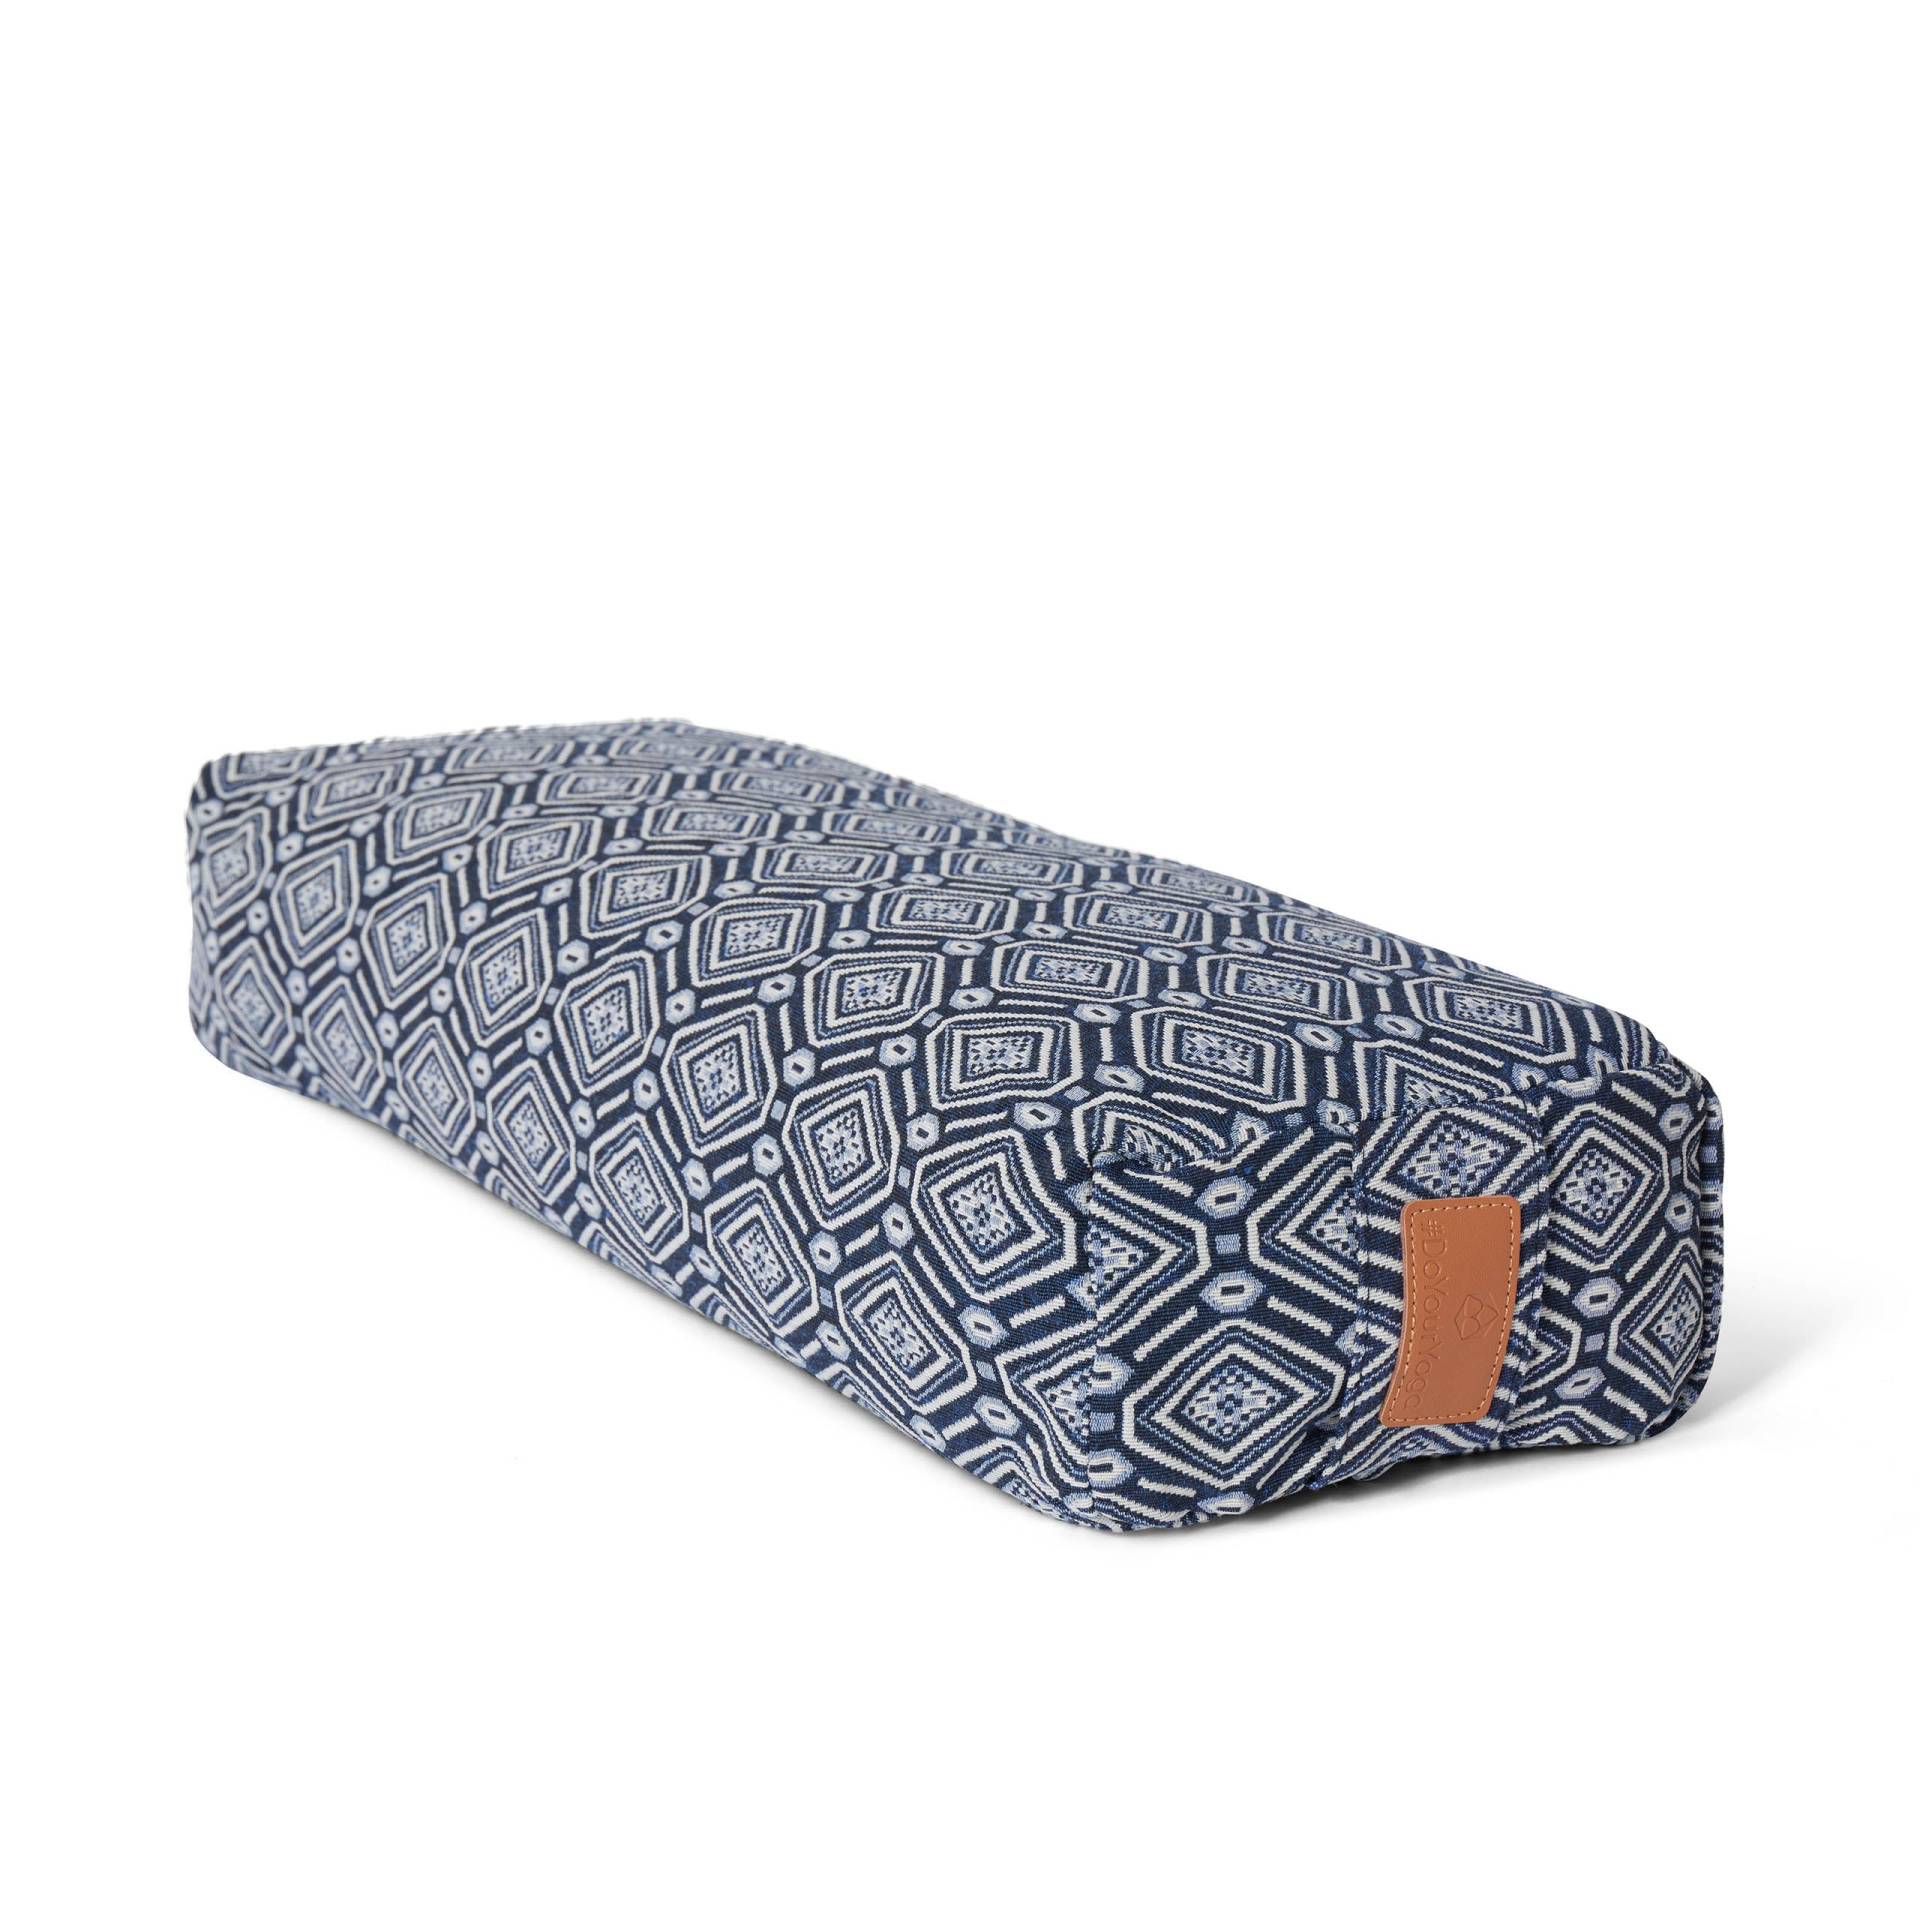 Yoga-Bolster Paravati - gefüllt mit Bio-Dinkelspelz - 67 x 22 x 13 cm - Style 6 (Blau-Weiß) von #DoYourYoga